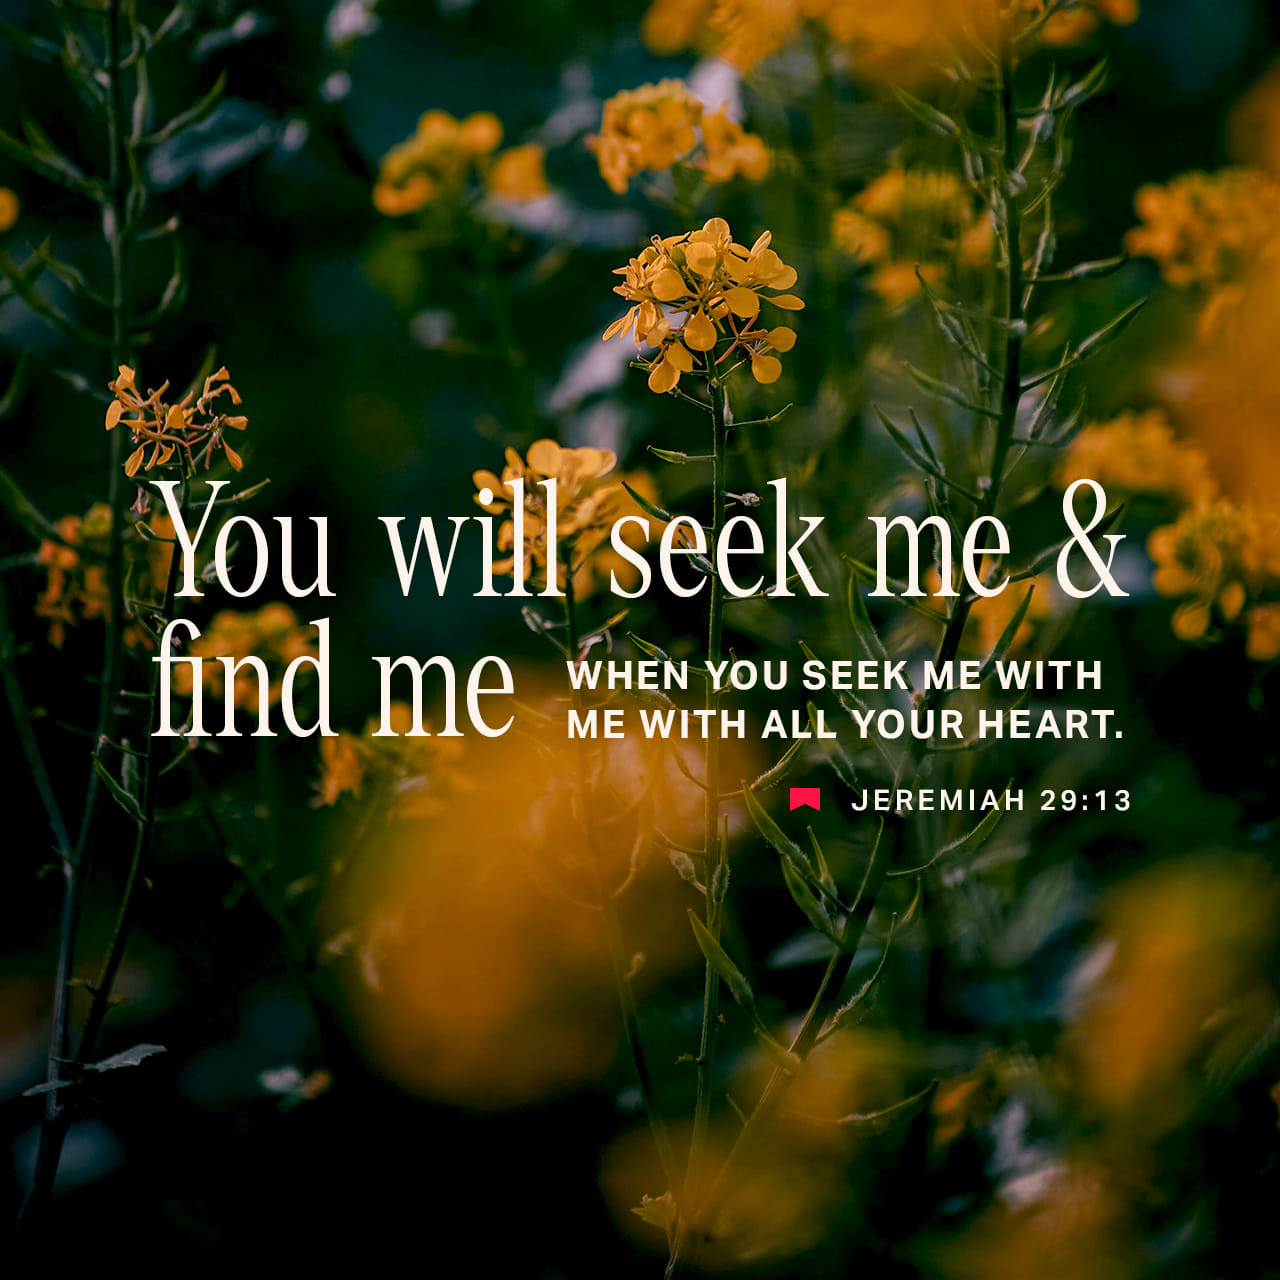 Me and seek